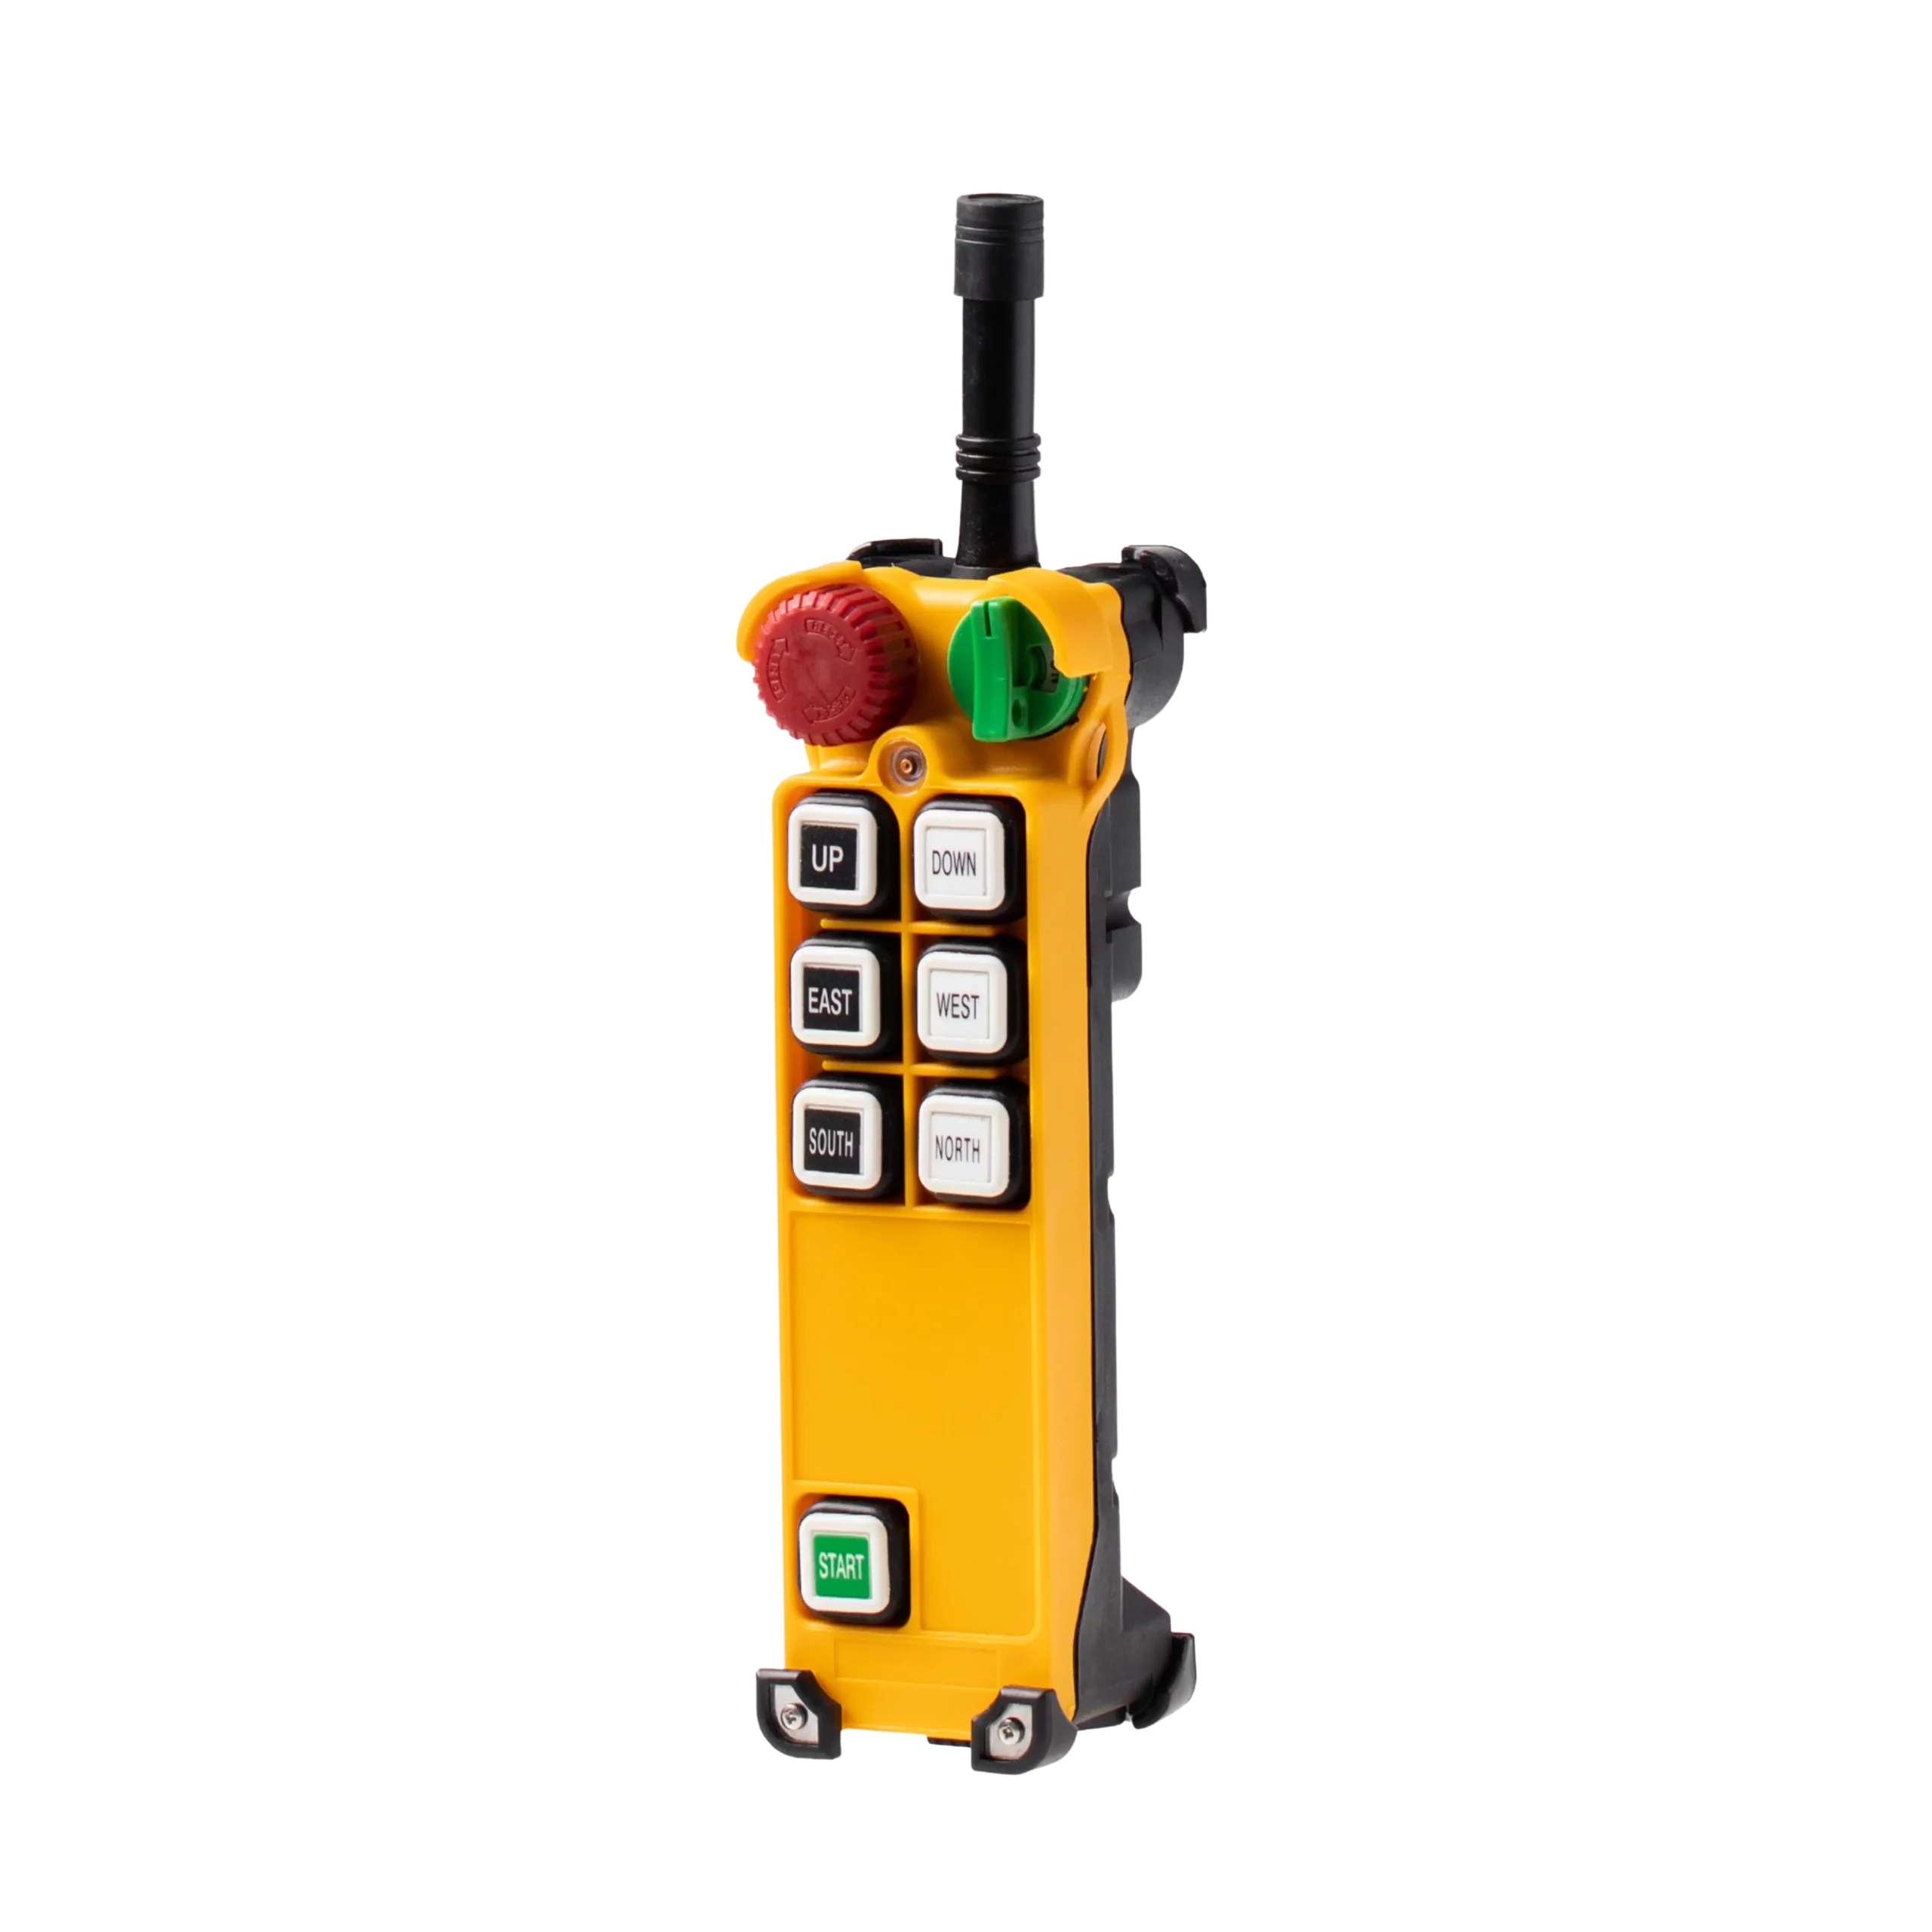 TELECRANE F24-6S/6D Industrial radio remote control